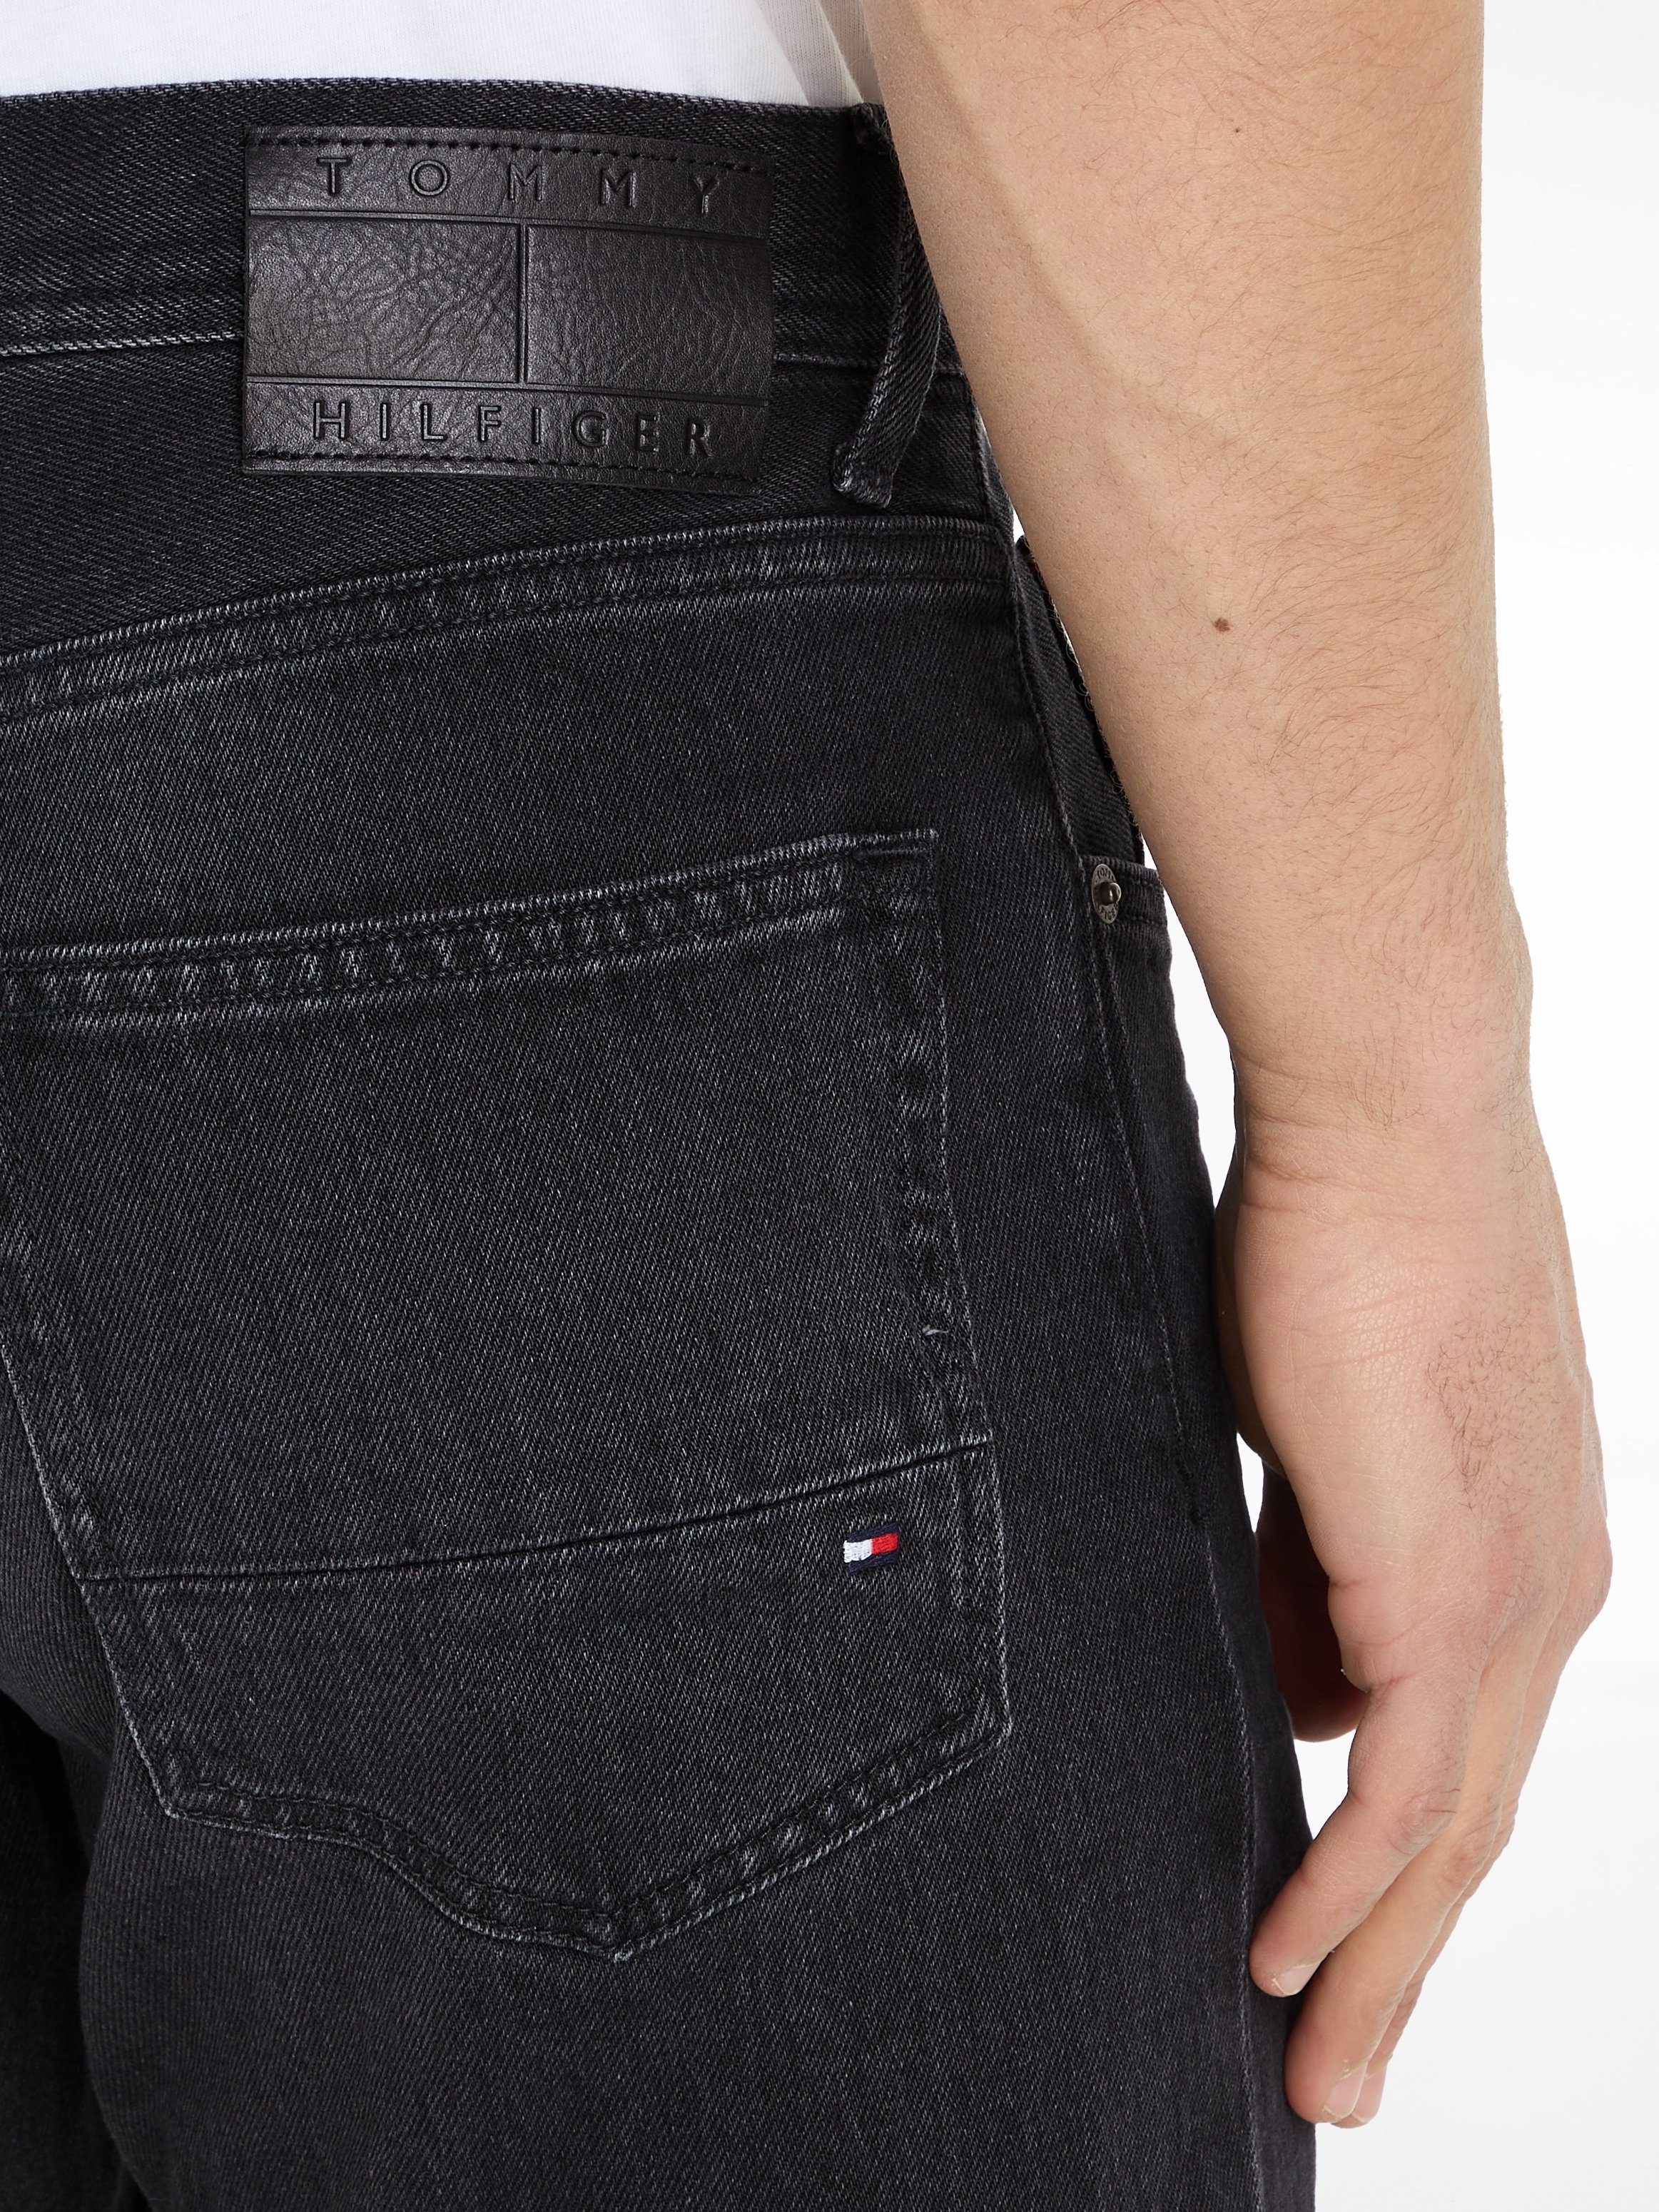 Tommy Hilfiger 5-pocket jeans REGULAR MERCER STR